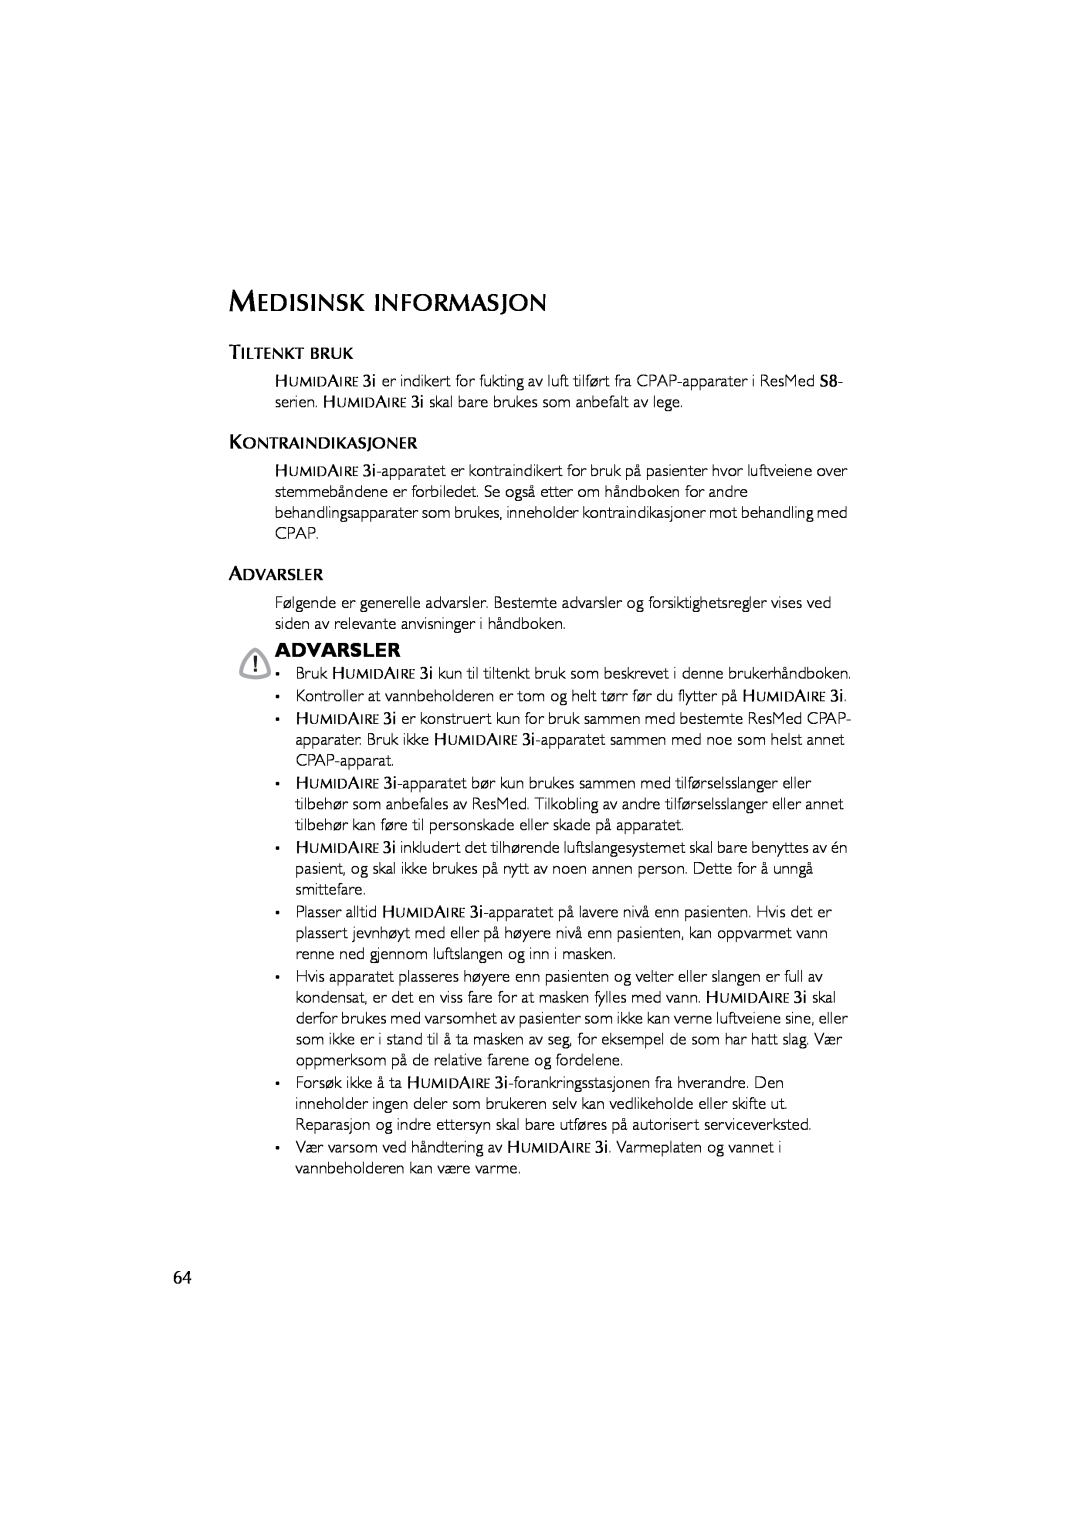 ResMed Humidifier user manual Medisinsk Informasjon, Advarsler 